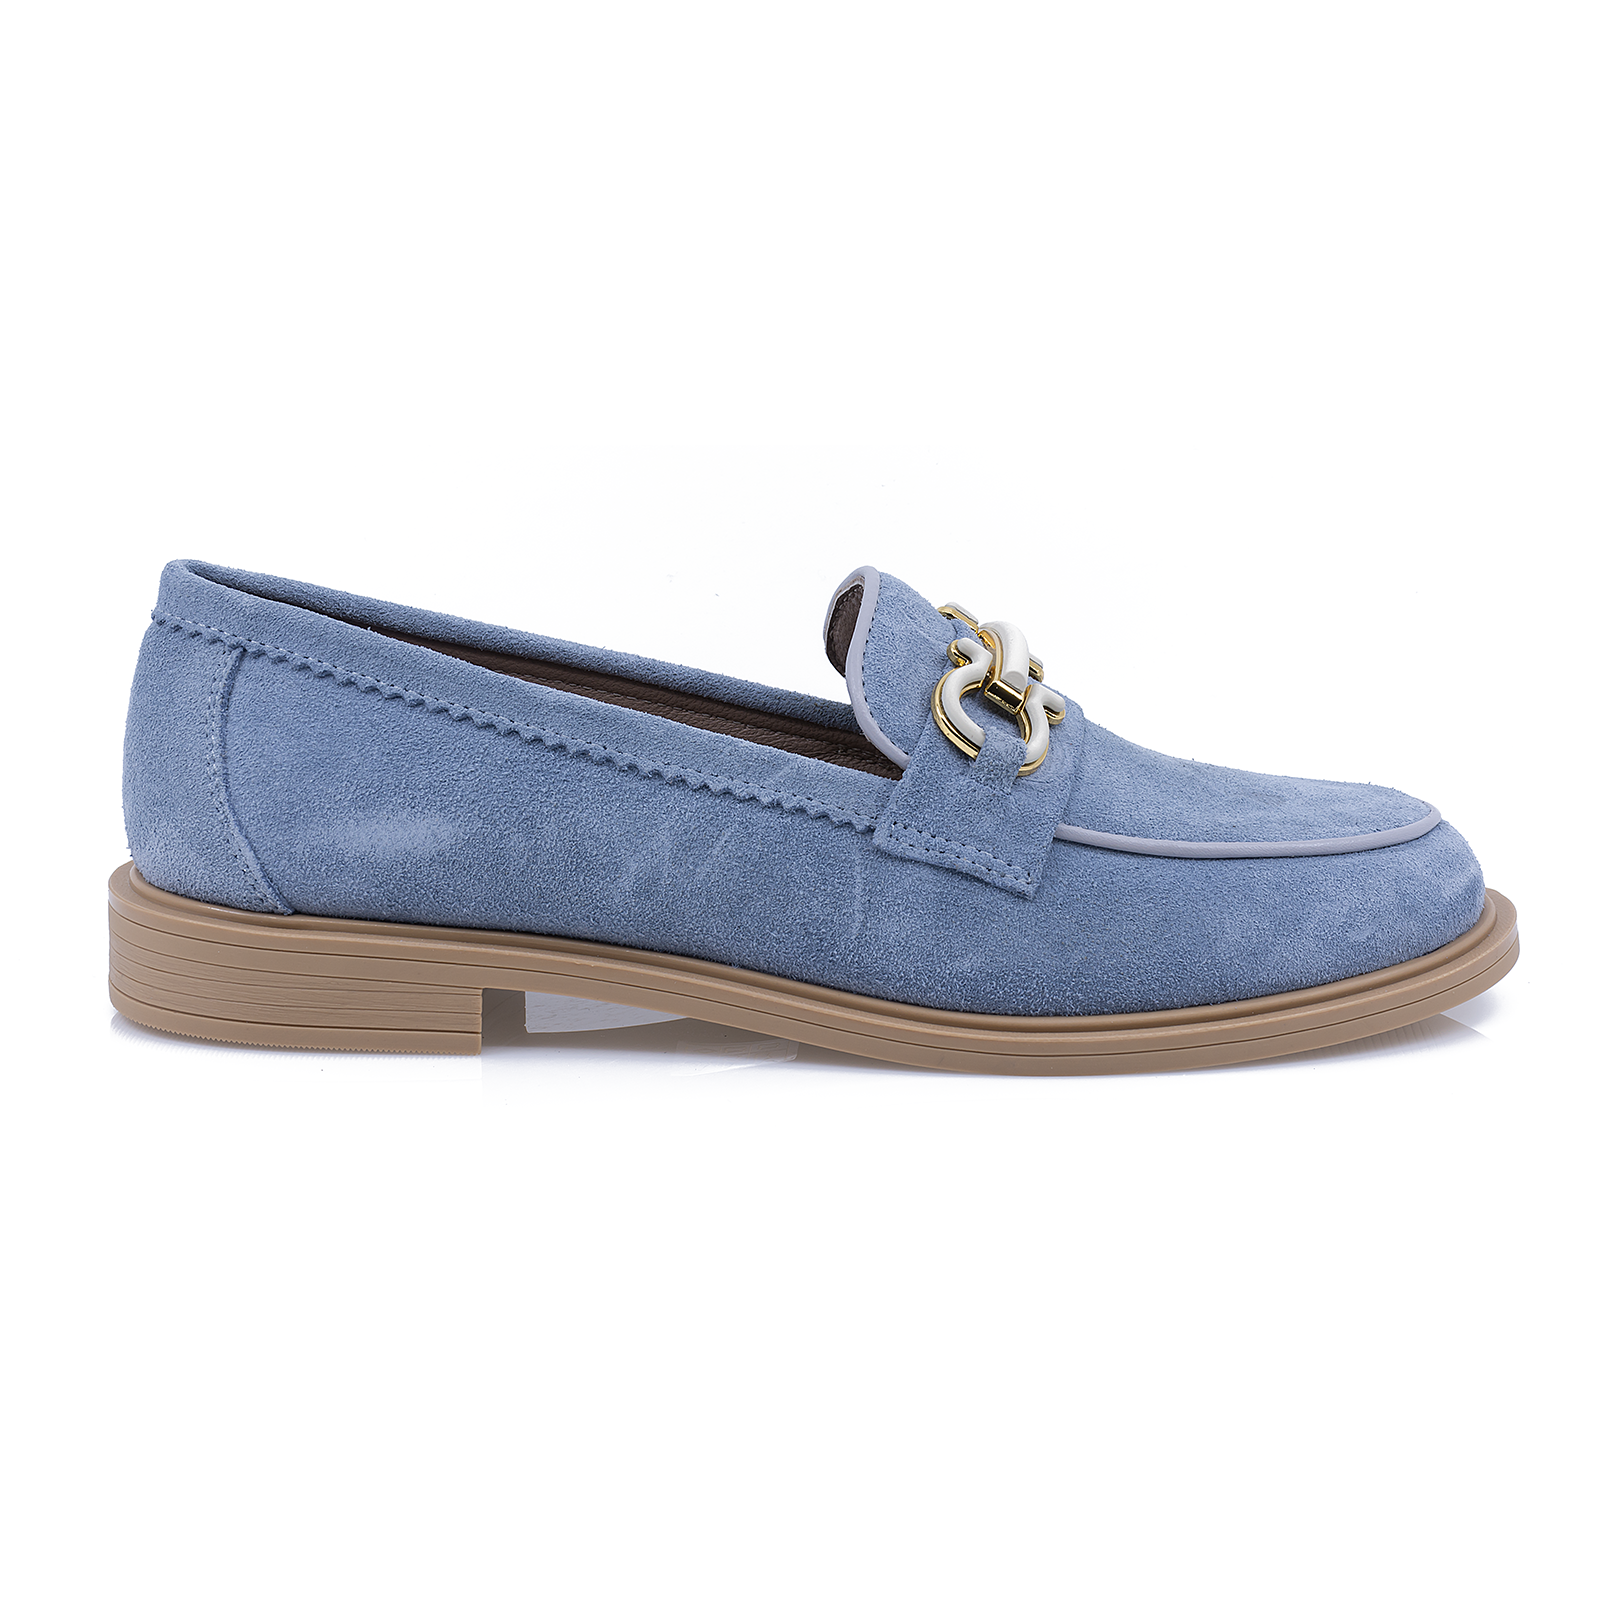 Pantofi-dama-Caspian-Cas-6007-casual-piele-intoarsa-albastru-nouamoda.ro-1